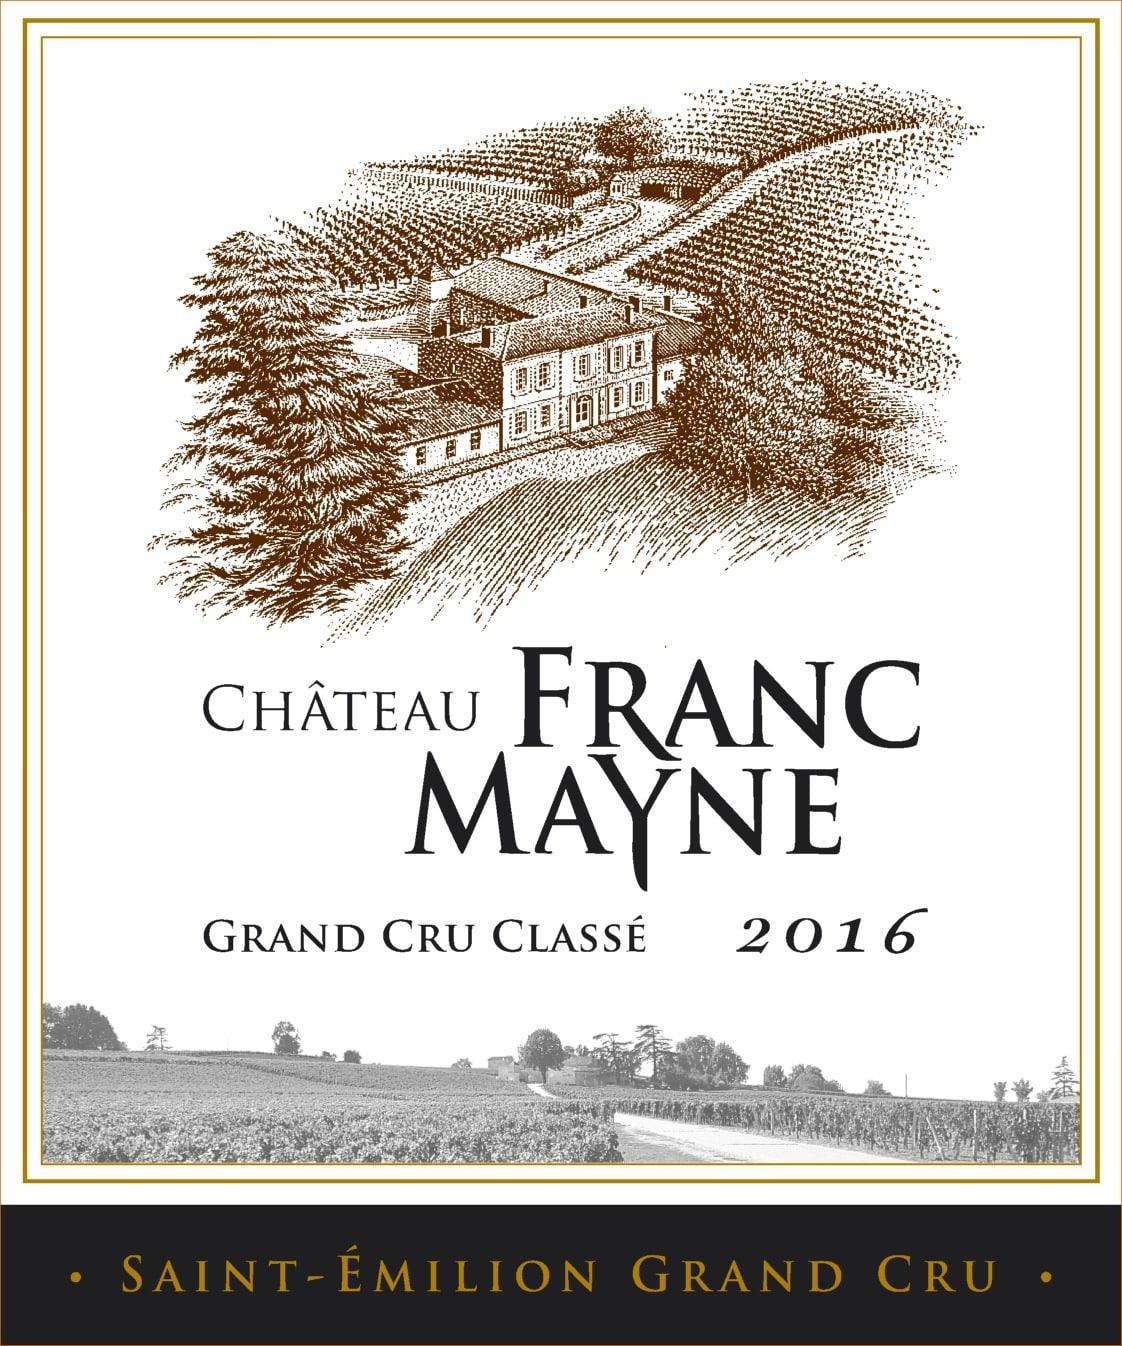 Château Franc Mayne